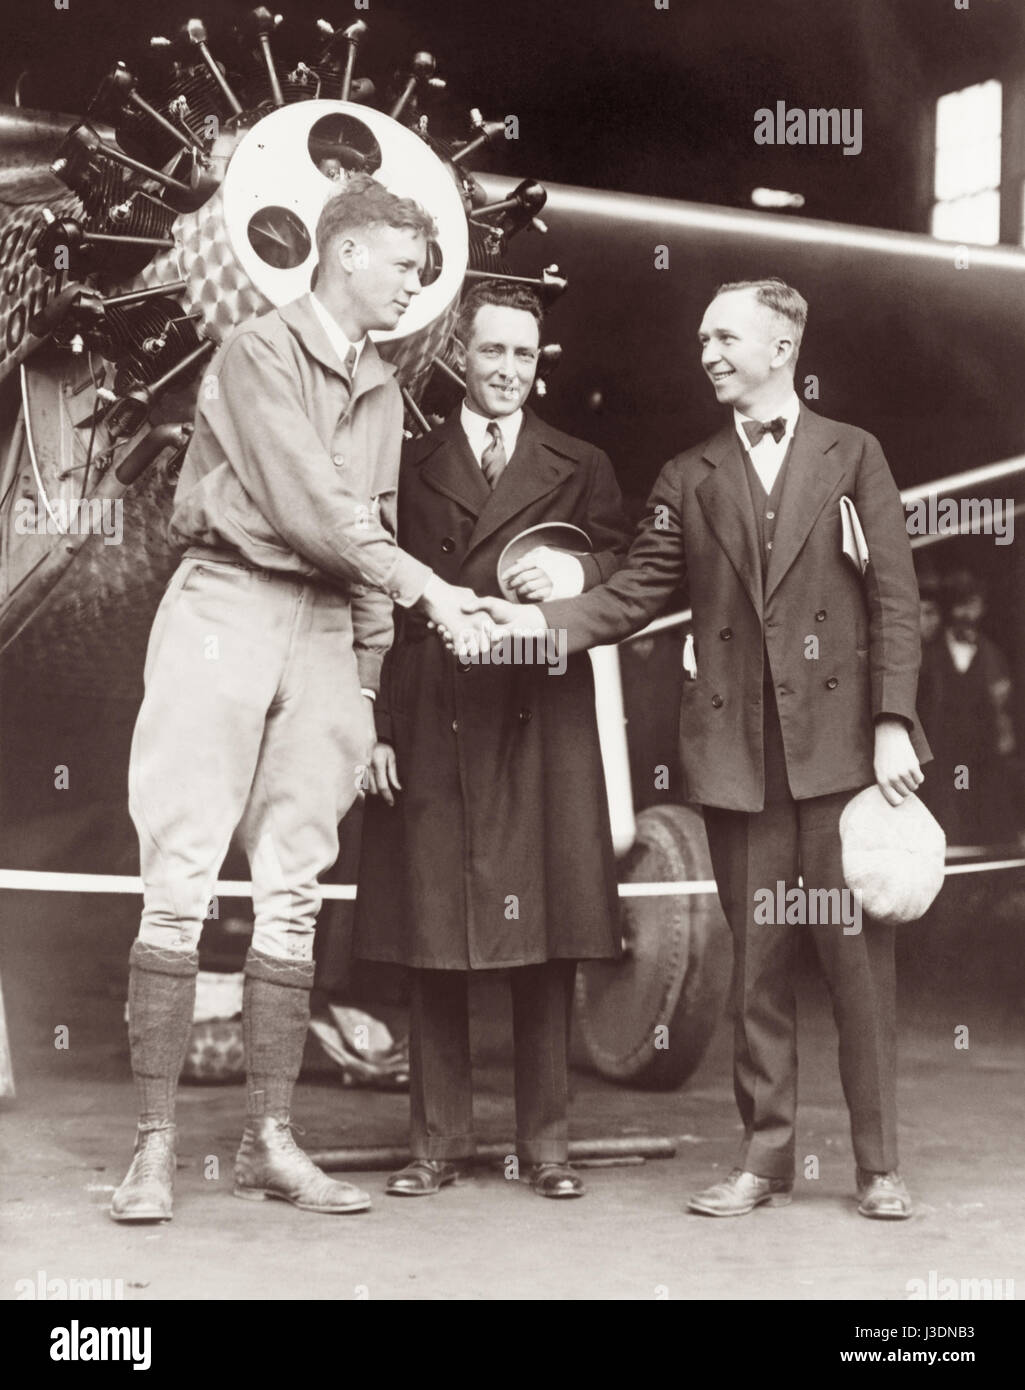 Rivalen Flieger Charles Lindbergh und Clarence Chamberlin Händeschütteln vor Lindberghs Spirit of St. Louis Flugzeug, mit dem berühmten Explorer und pilot Richard Byrd stehen zwischen ihnen, im Mai 1927 vor konkurrierenden versucht, die ersten Transatlantik-Flug abzuschließen. Stockfoto